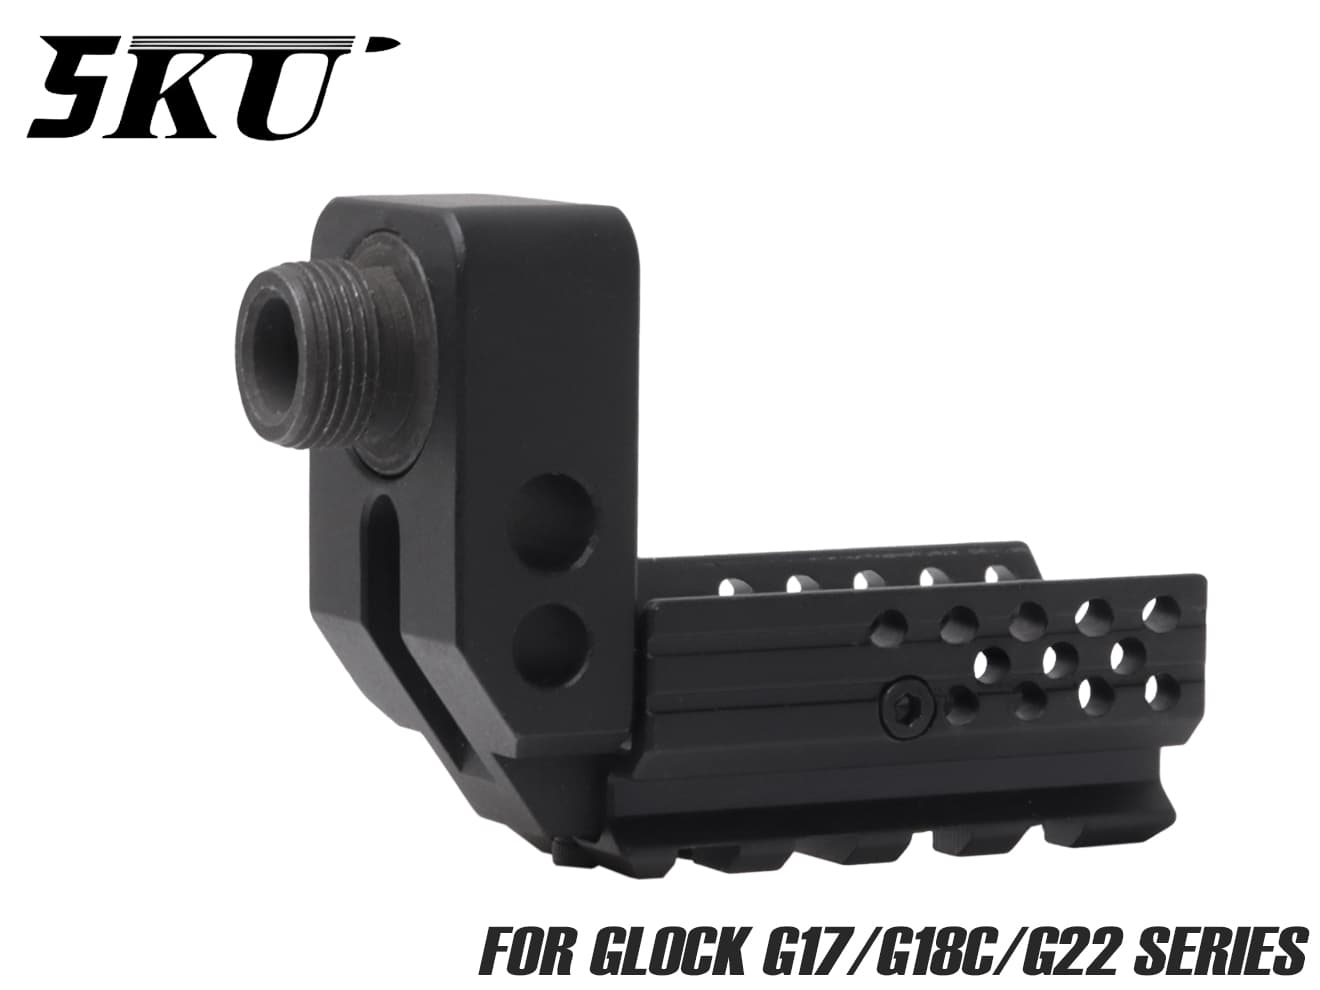 5KU SAS フロントキット for G17/G18C/G22◆フレーム アンダーレール マウント サイレンサーアタッチメント 2ピース 構造 フラッシュライト トレーサー 使用可能